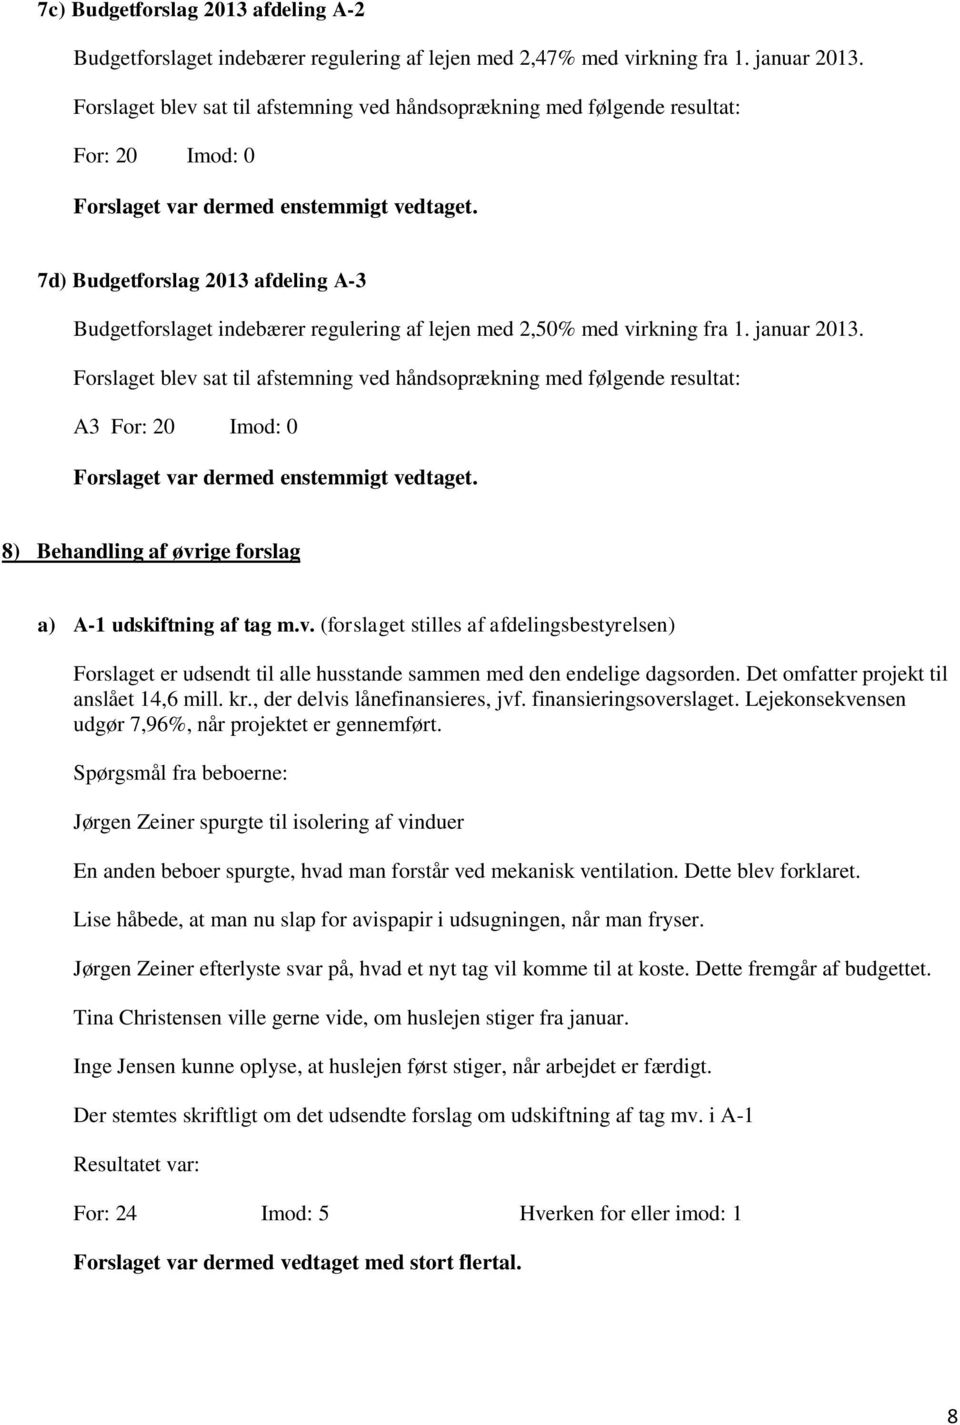 7d) Budgetforslag 2013 afdeling A-3 Budgetforslaget indebærer regulering af lejen med 2,50% med virkning fra 1. januar 2013.